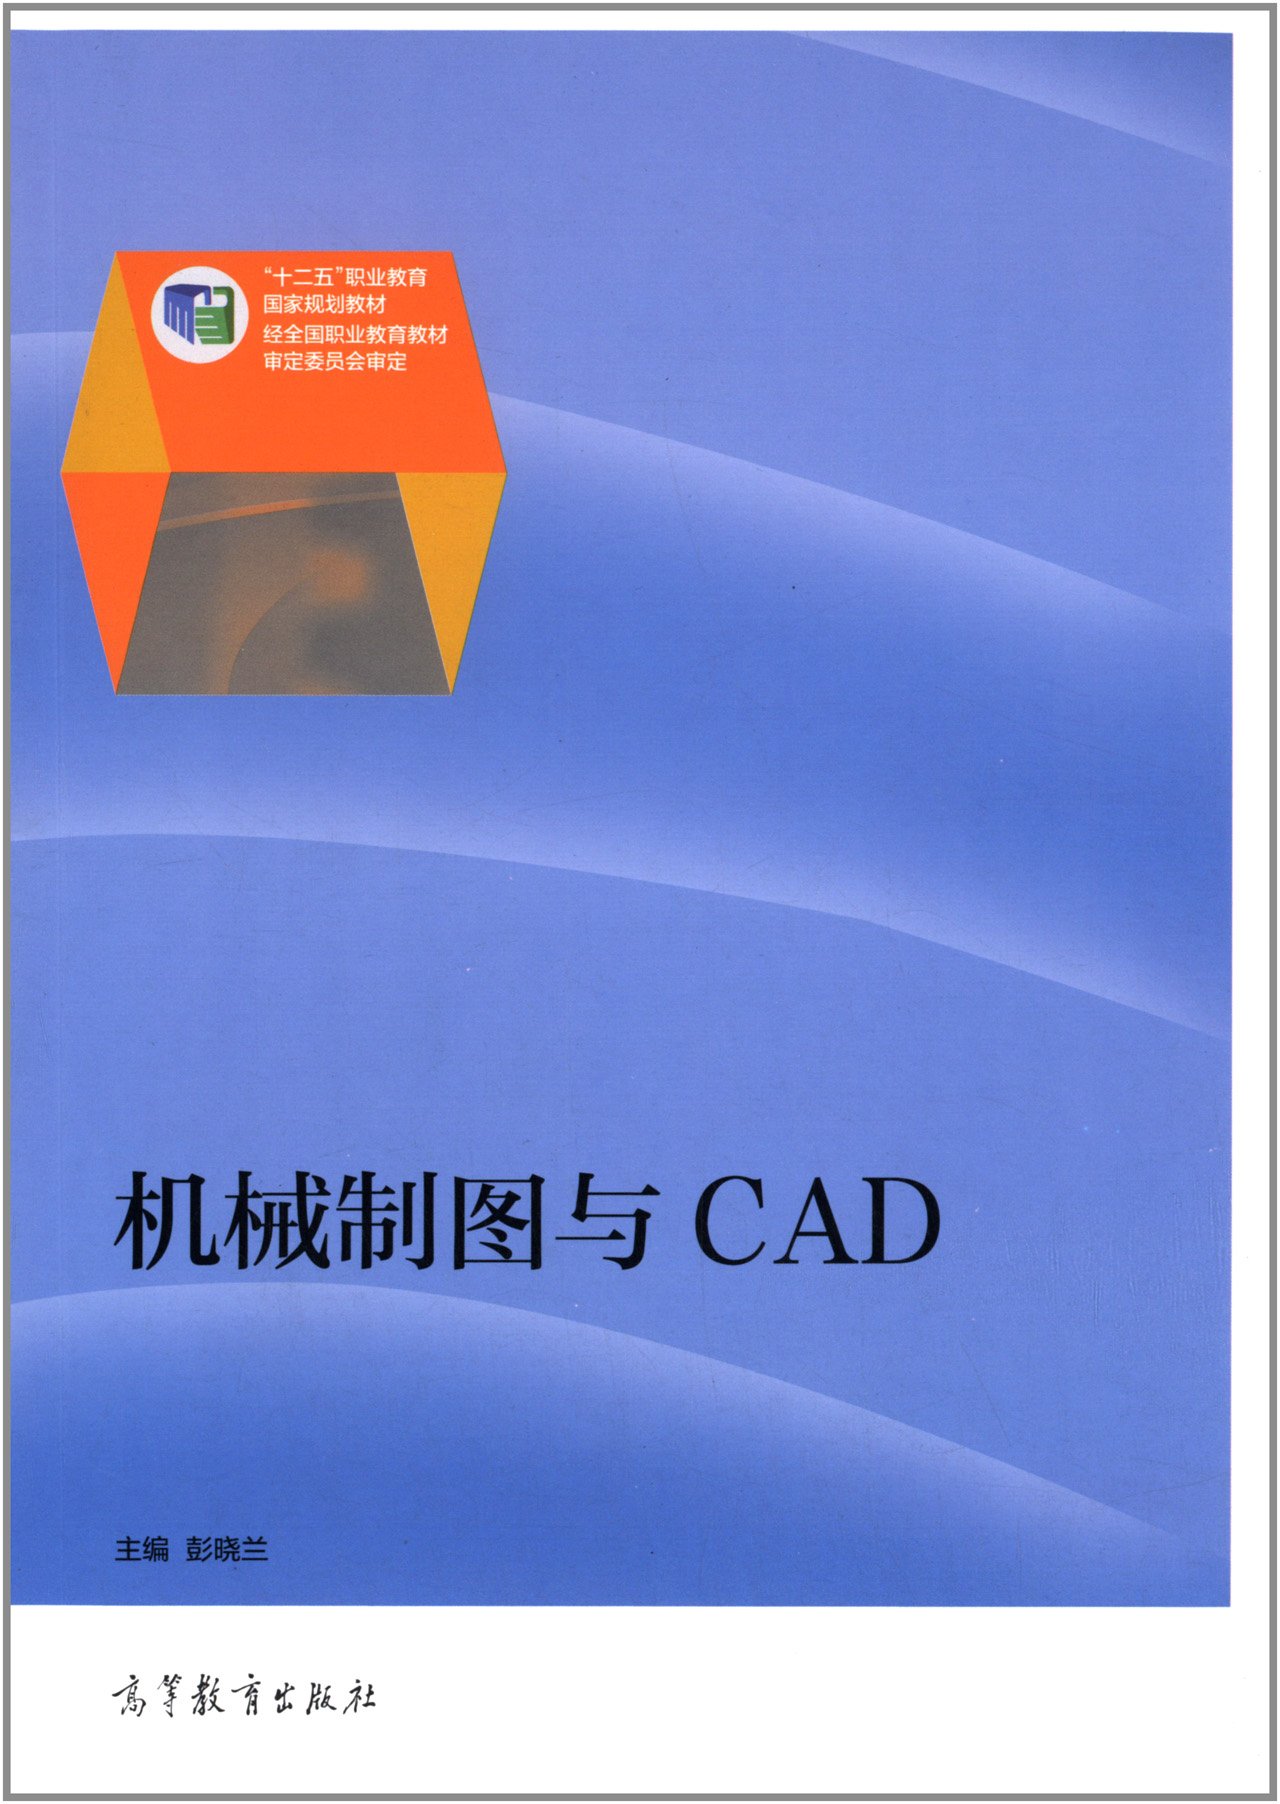 機械製圖與CAD(2014年高等教育出版社出版社的圖書)